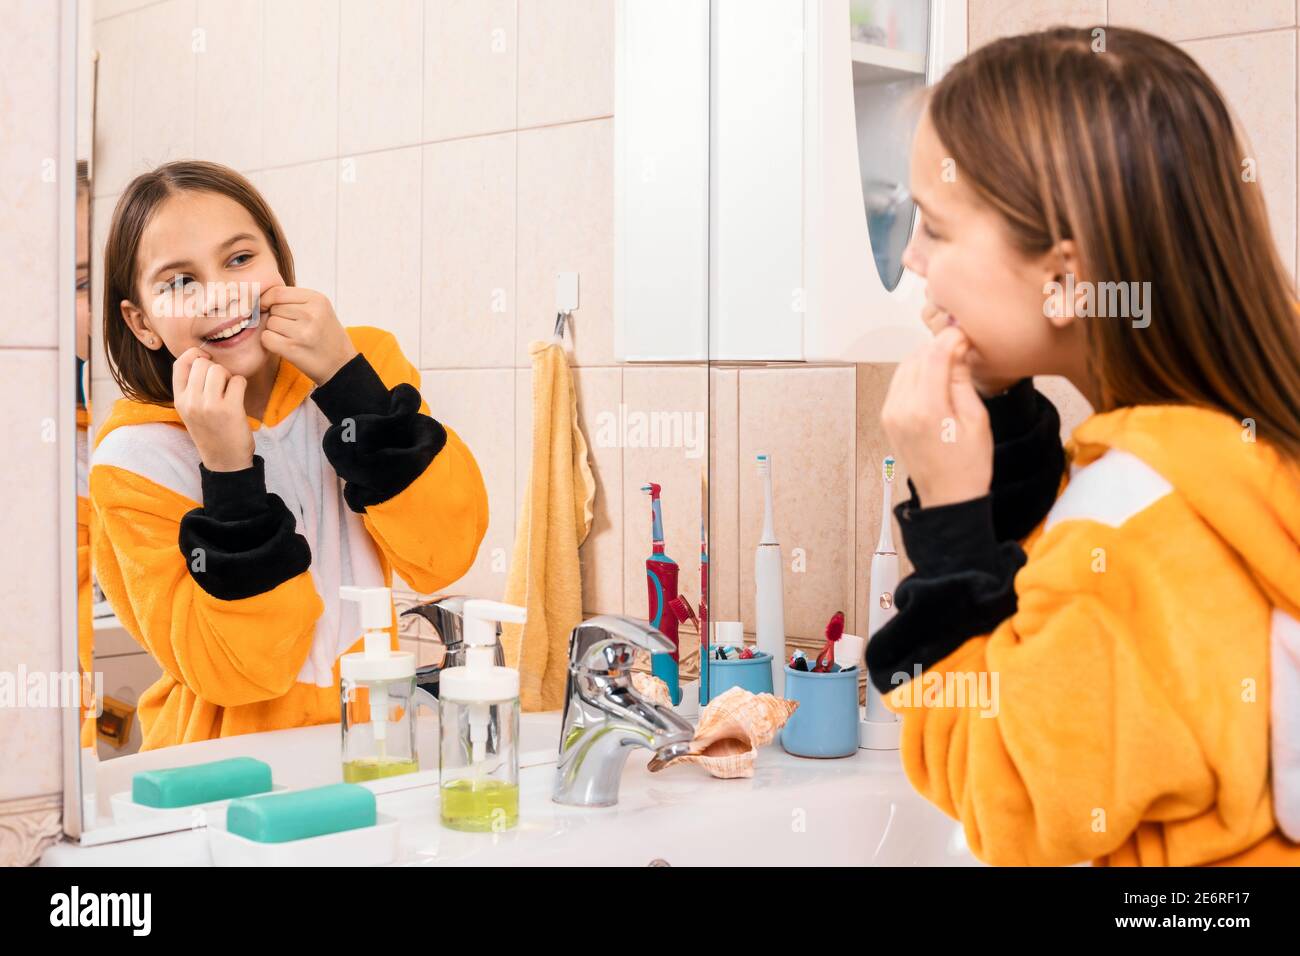 Tween girl wearing orange pyjamas uses dental floss to remove plaque between teeth Stock Photo